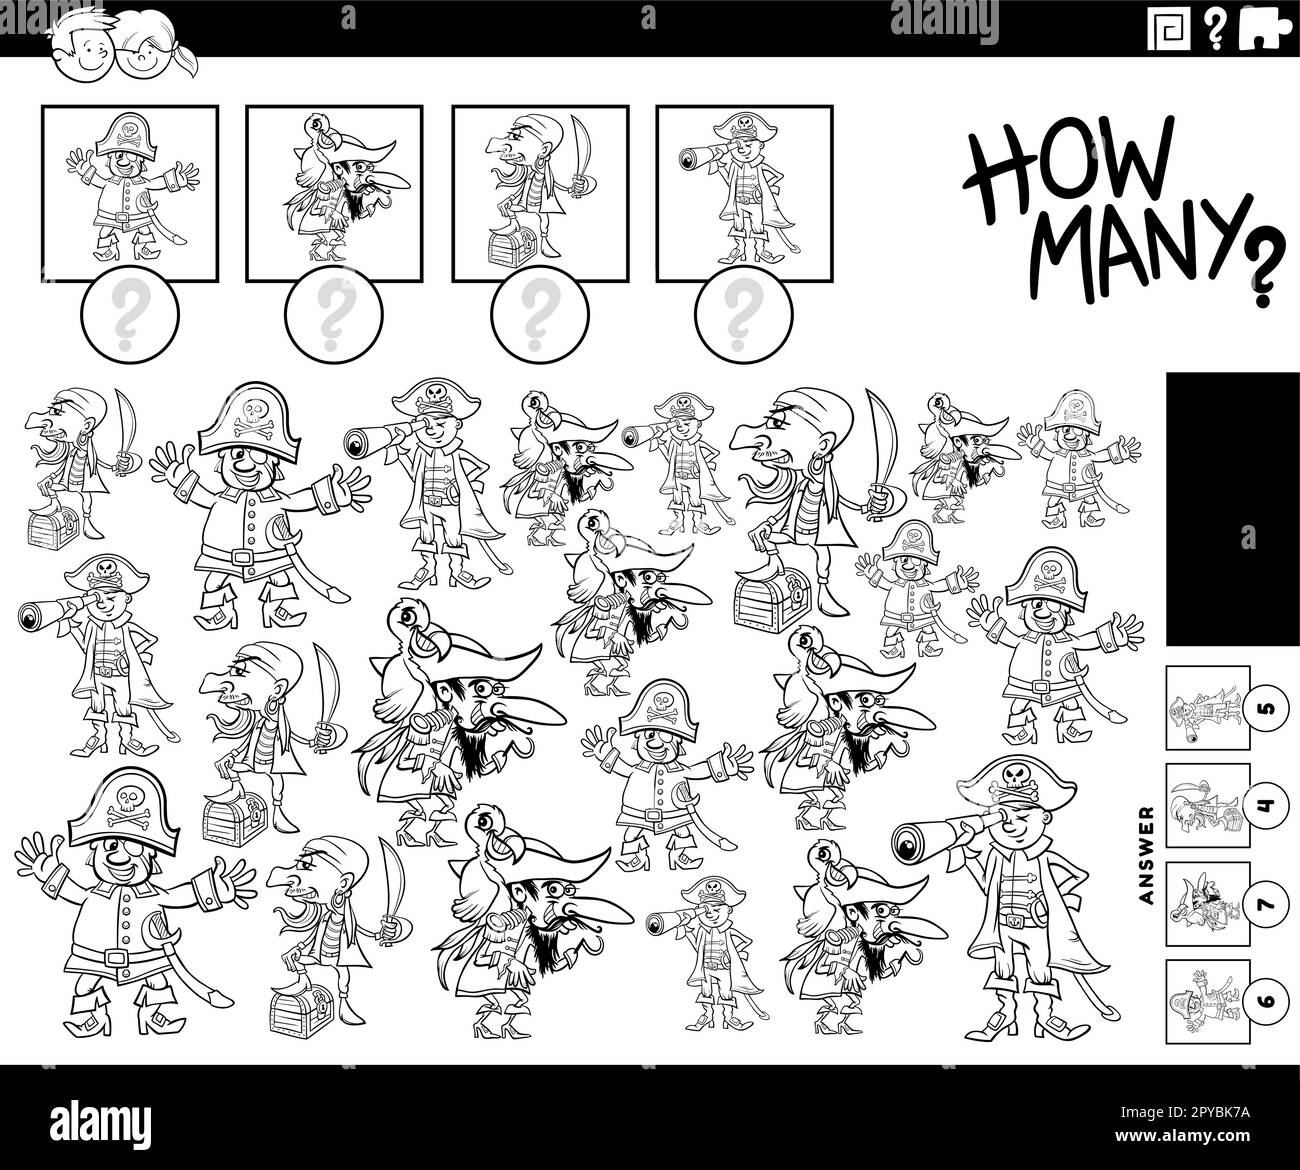 Illustration en noir et blanc de l'activité de comptage éducative avec les personnages amusants de caricature de pirates page Illustration de Vecteur